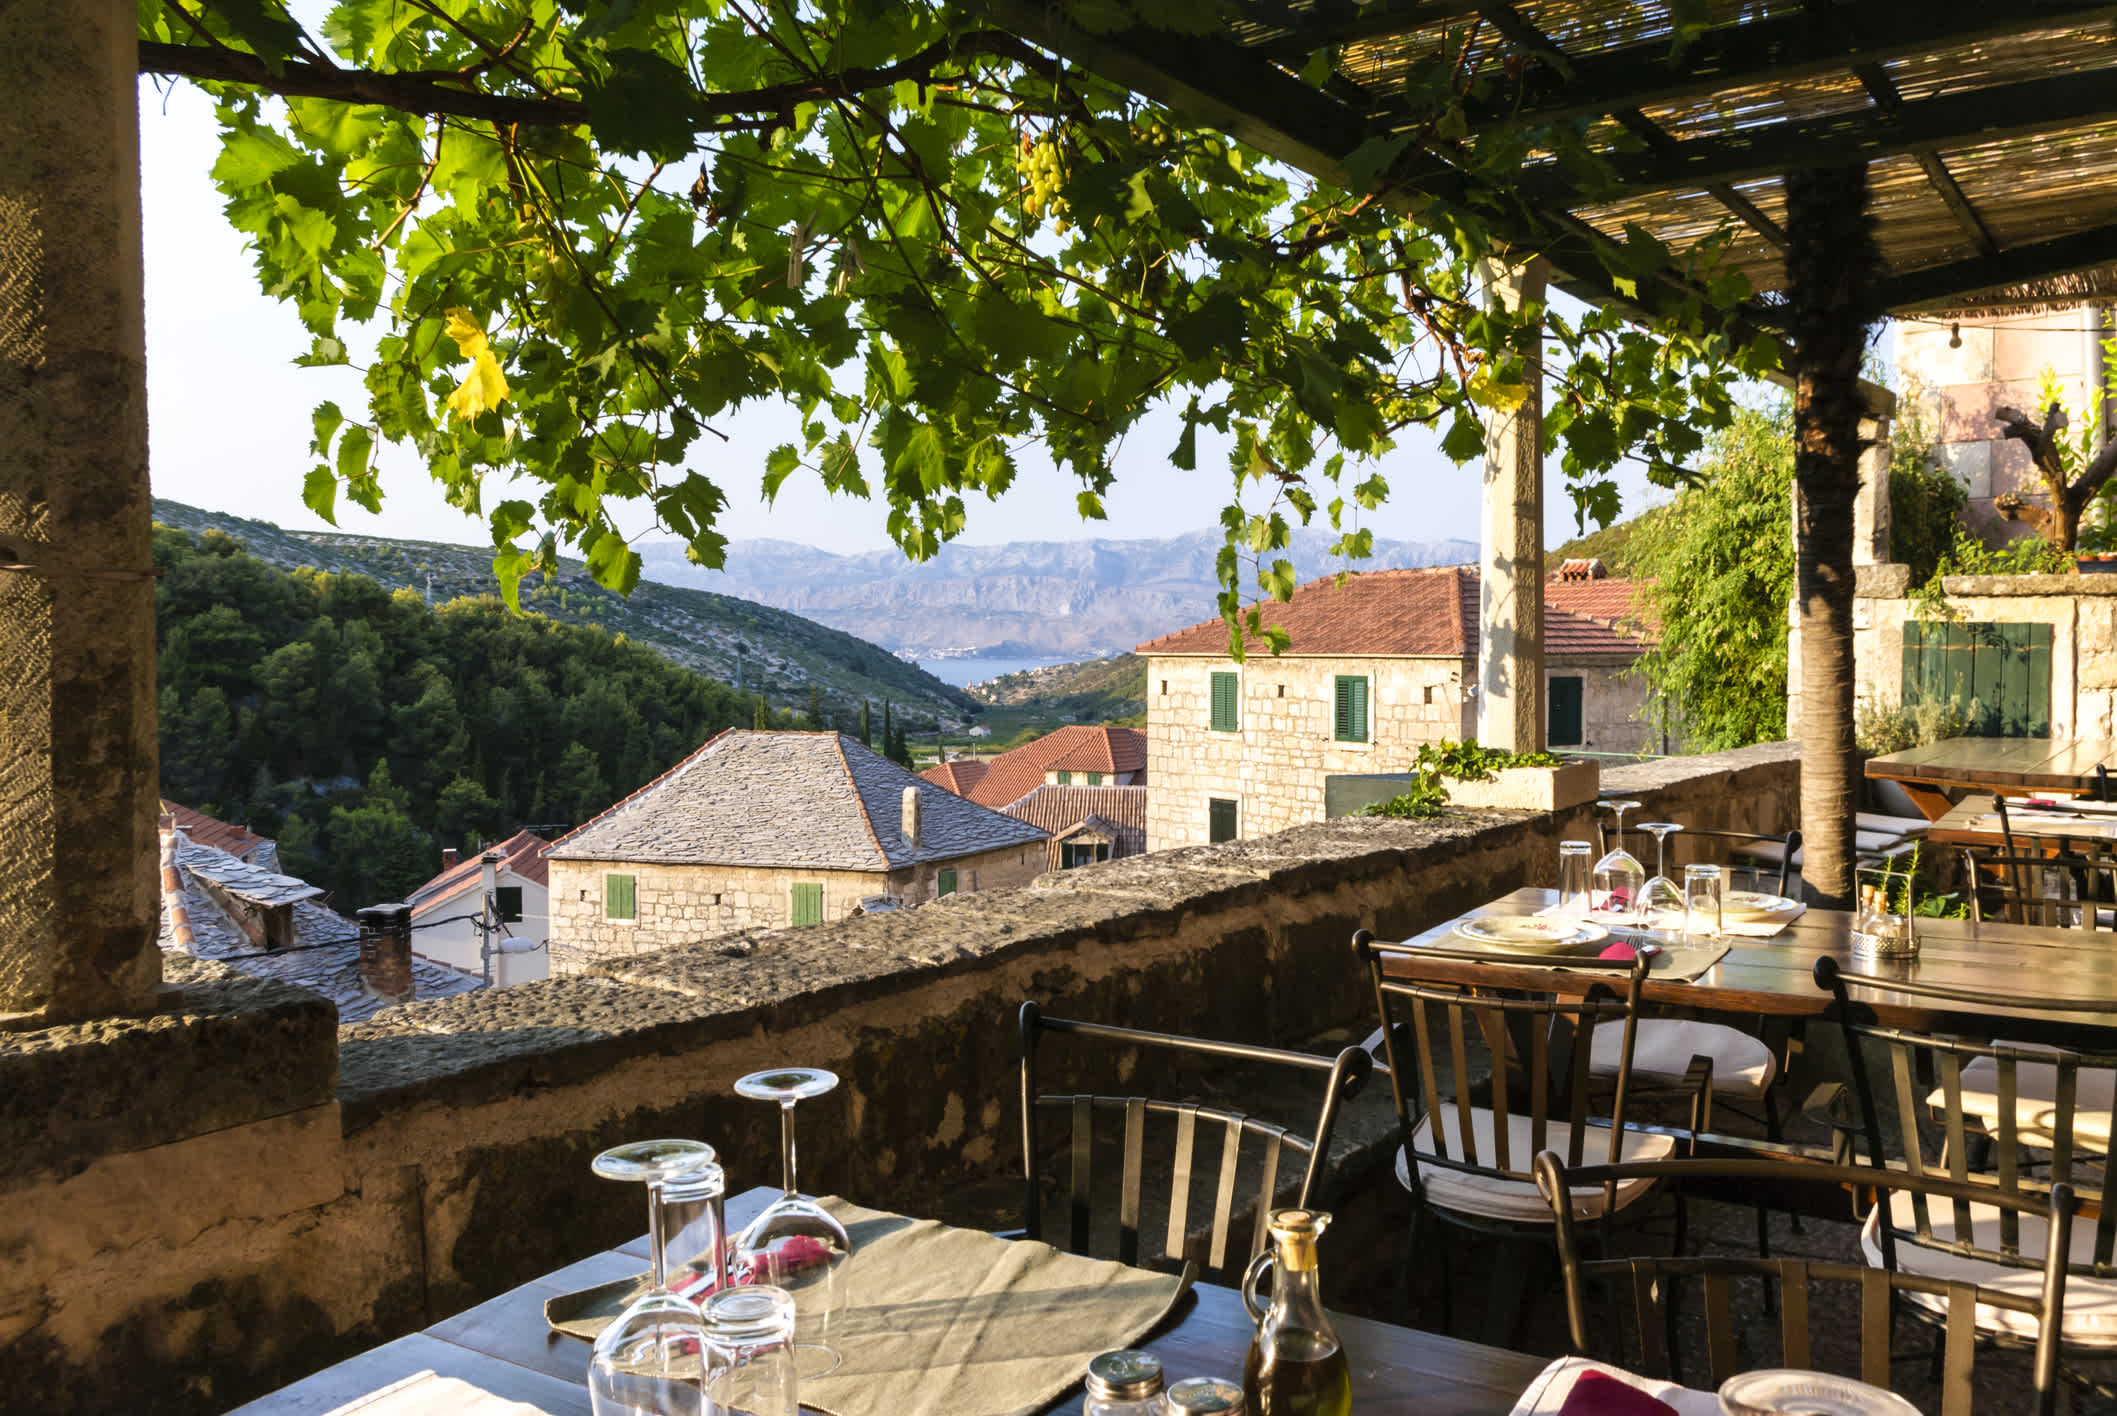 Restaurant-terrasse avec une belle vue sur la ville de Dol, la mer et les montagnes, en Croatie